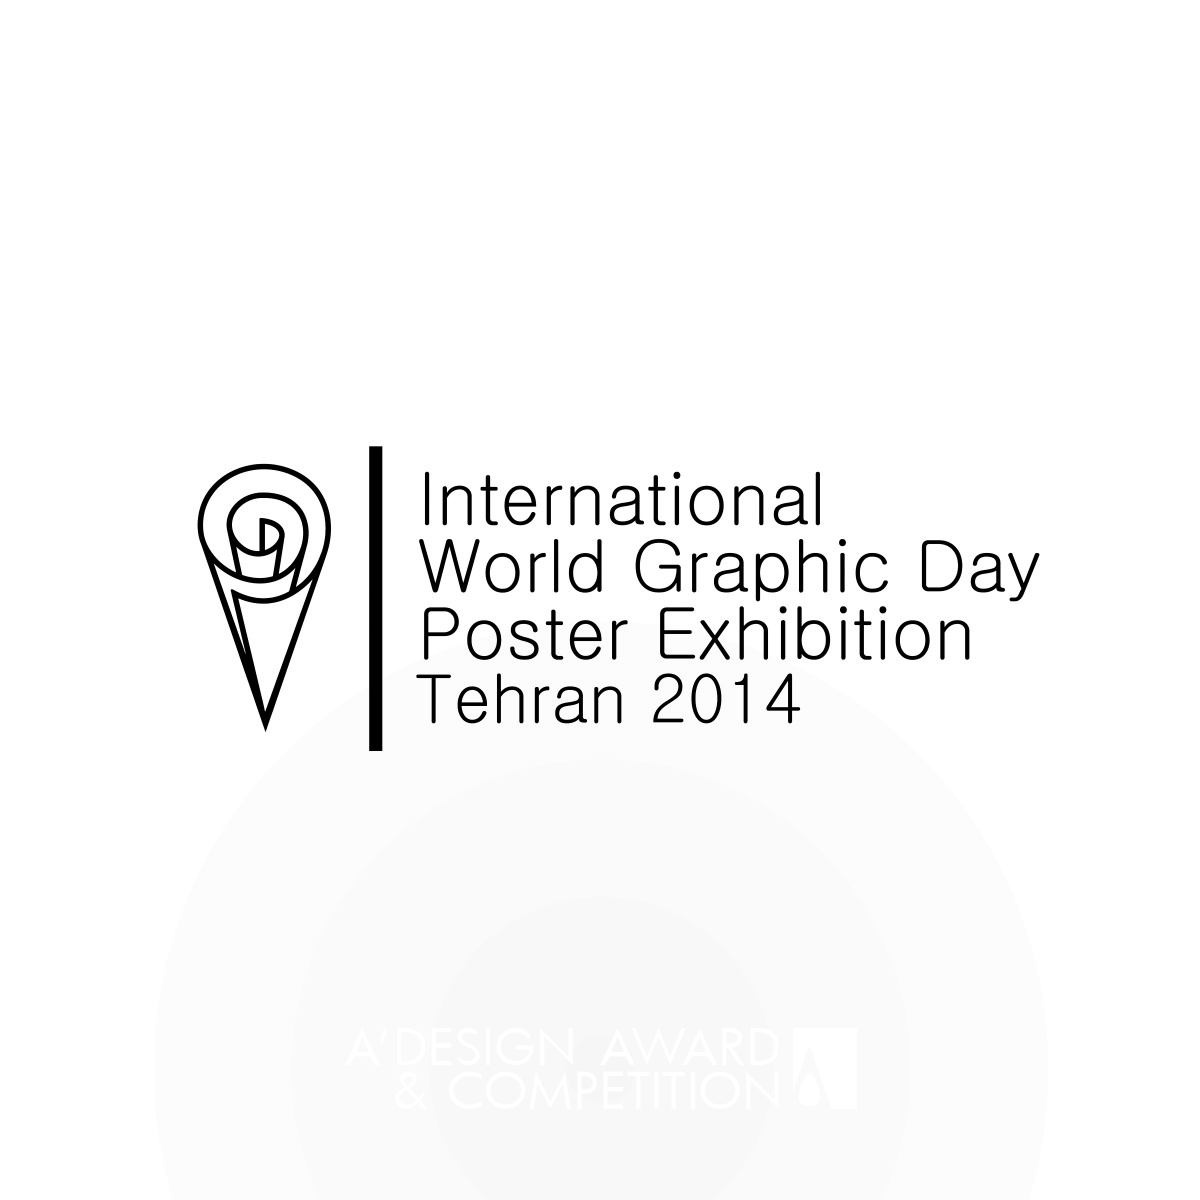 World Graphic Day poster exhibition Visual Identity by Morteza Farahnak